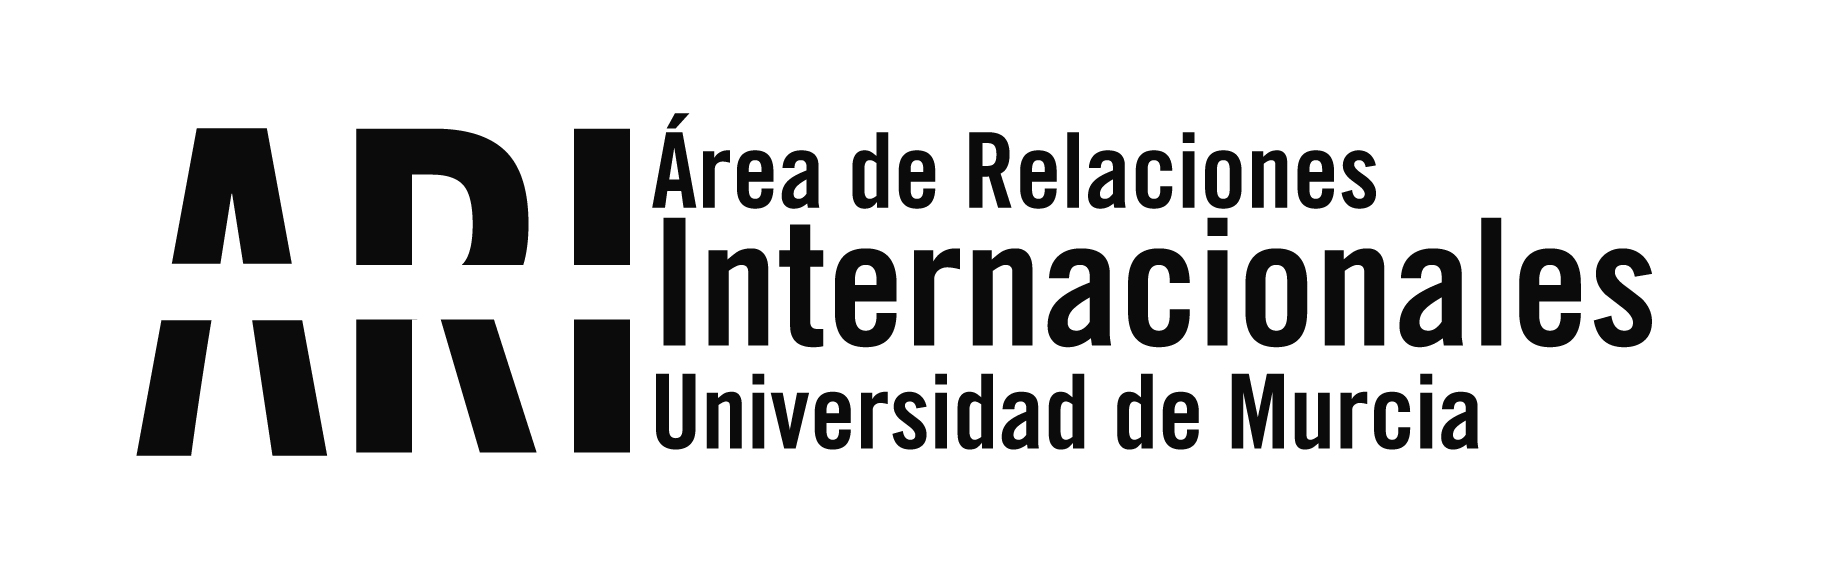 Reunión con Autoridades de Turismo de Córdoba - Argentina - Área de Relaciones Internacionales